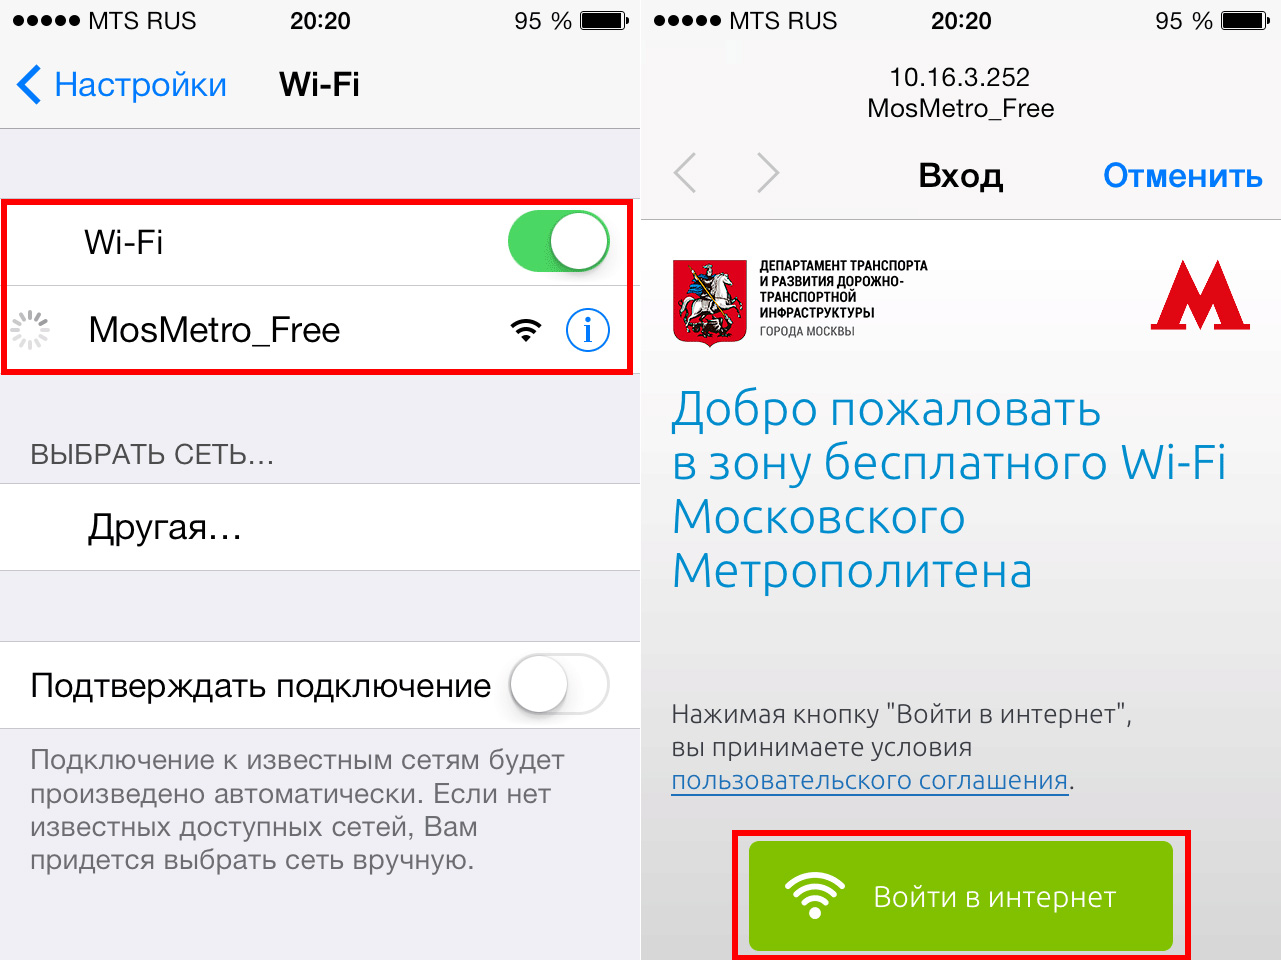 Kak-podklyuchitsya-k-Wi-Fi-v-Metro-5.jpg